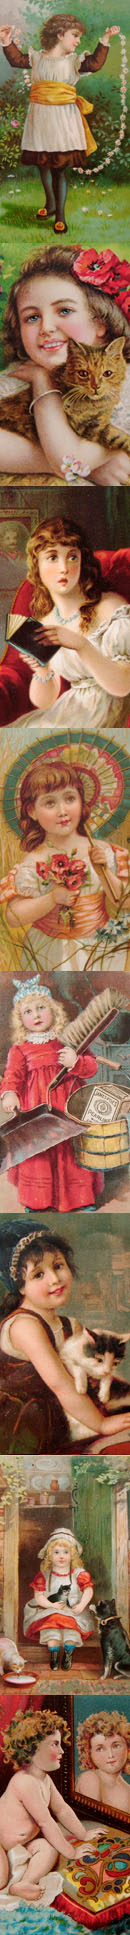 画像: 1800年代のカードたち